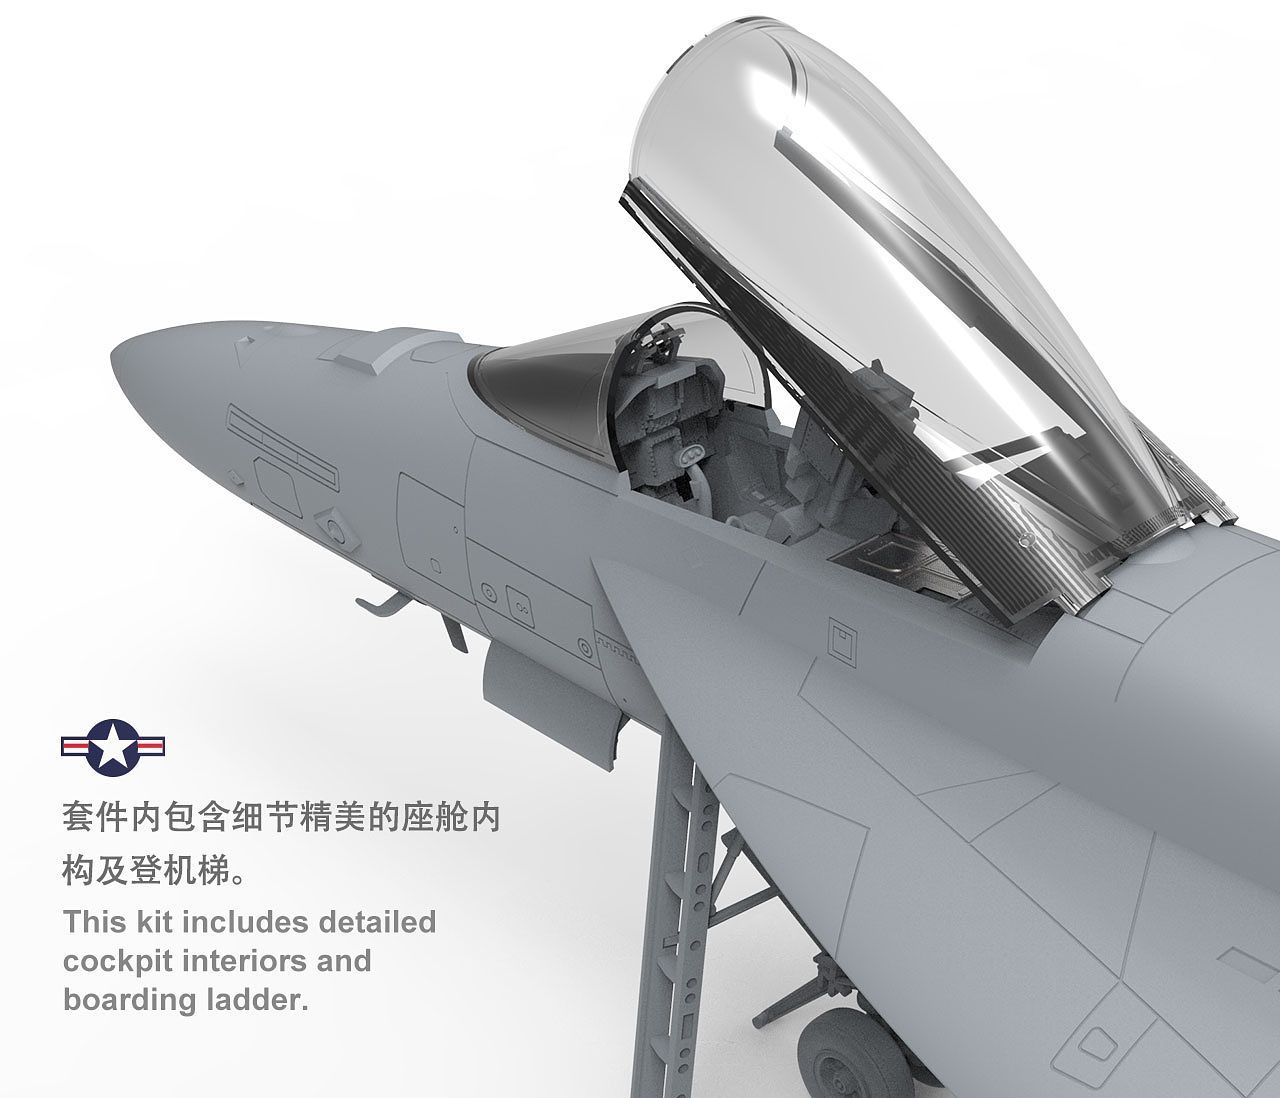 Meng 1:48 Boeing F/A-18E Super Hornet